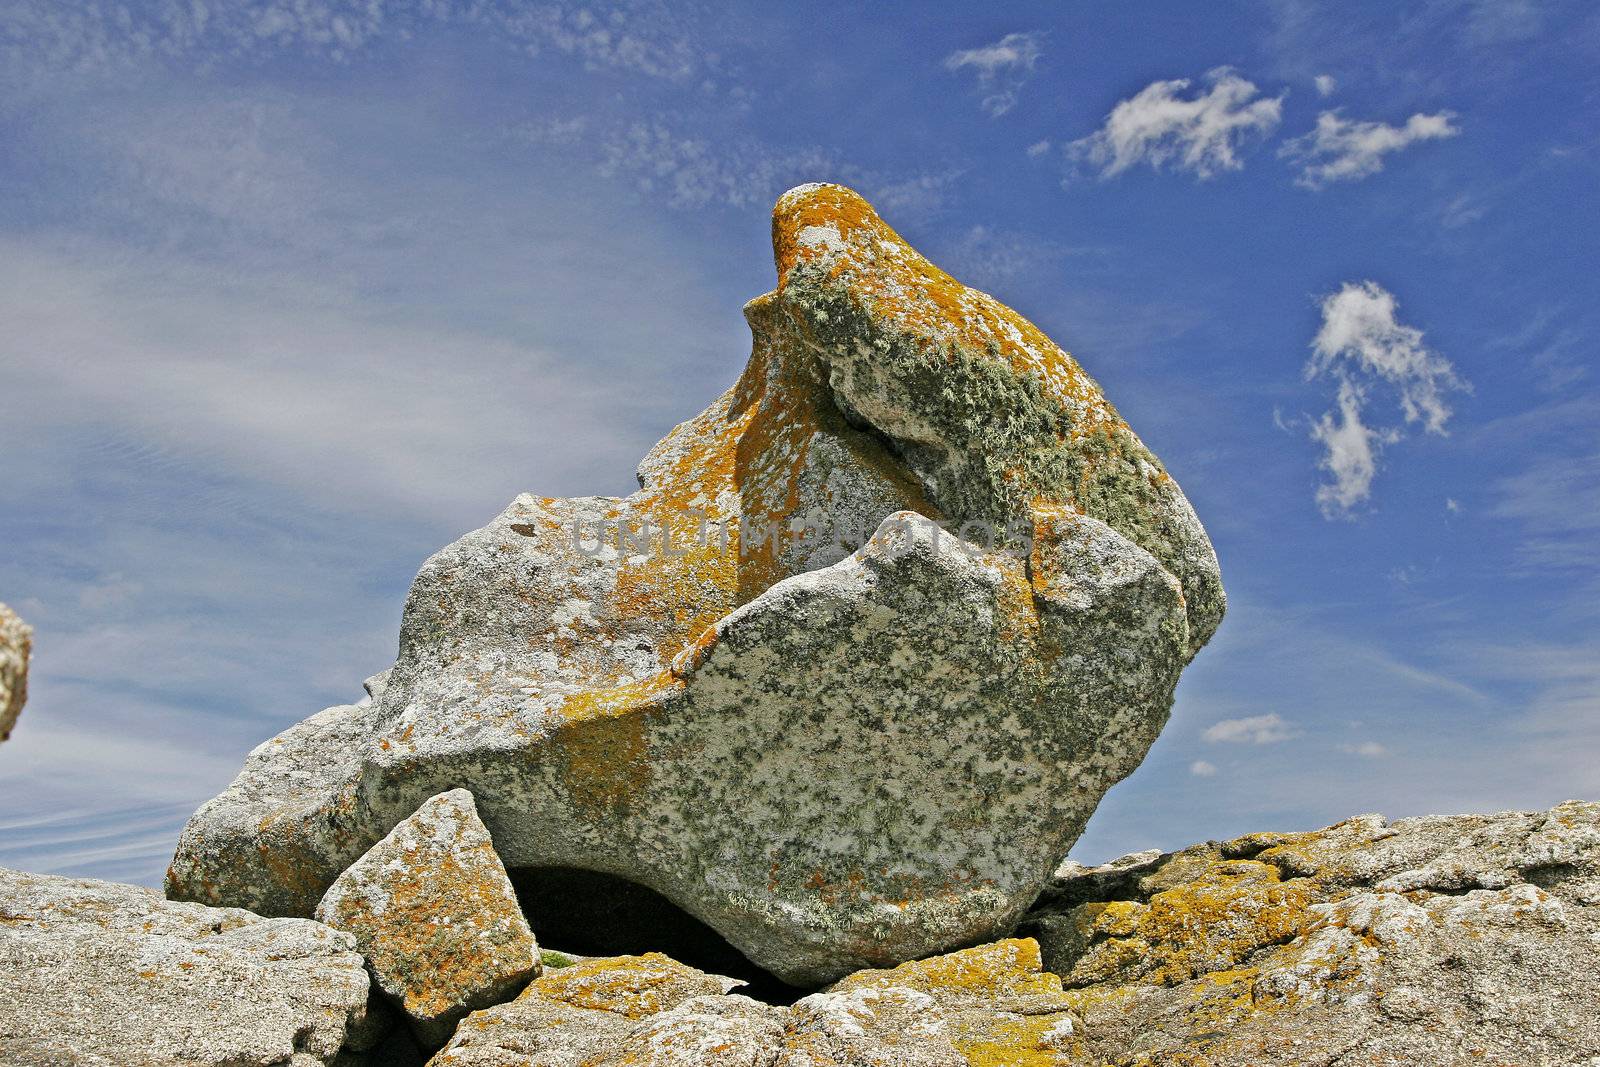 Rocks on the stone coast near Pointe de Trevignon, Brittany, North France. Stone with orange lichens.